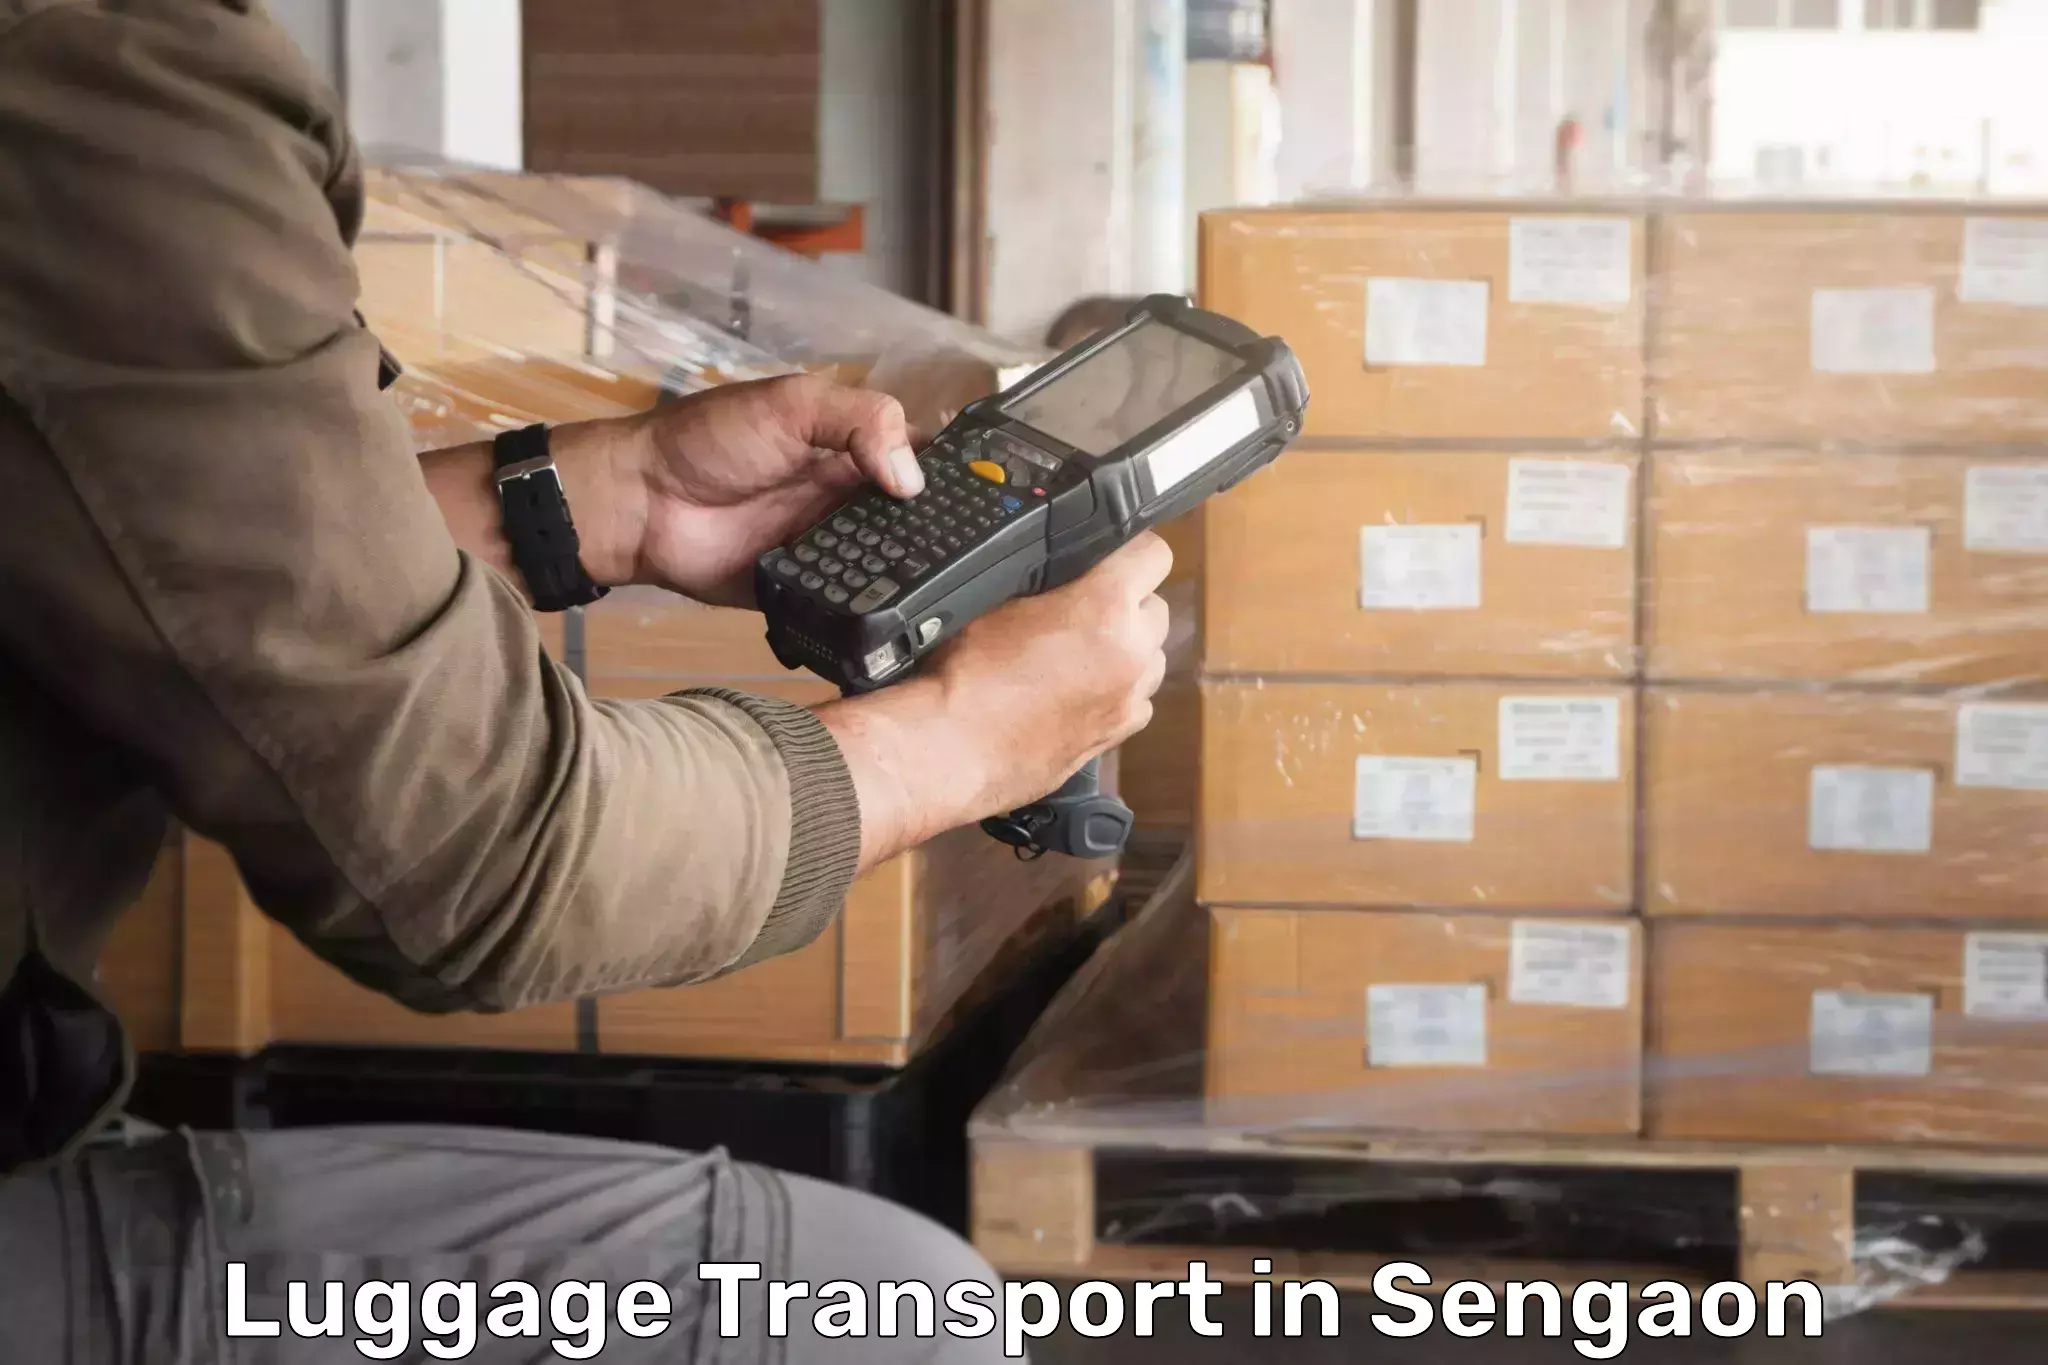 Rural baggage transport in Sengaon